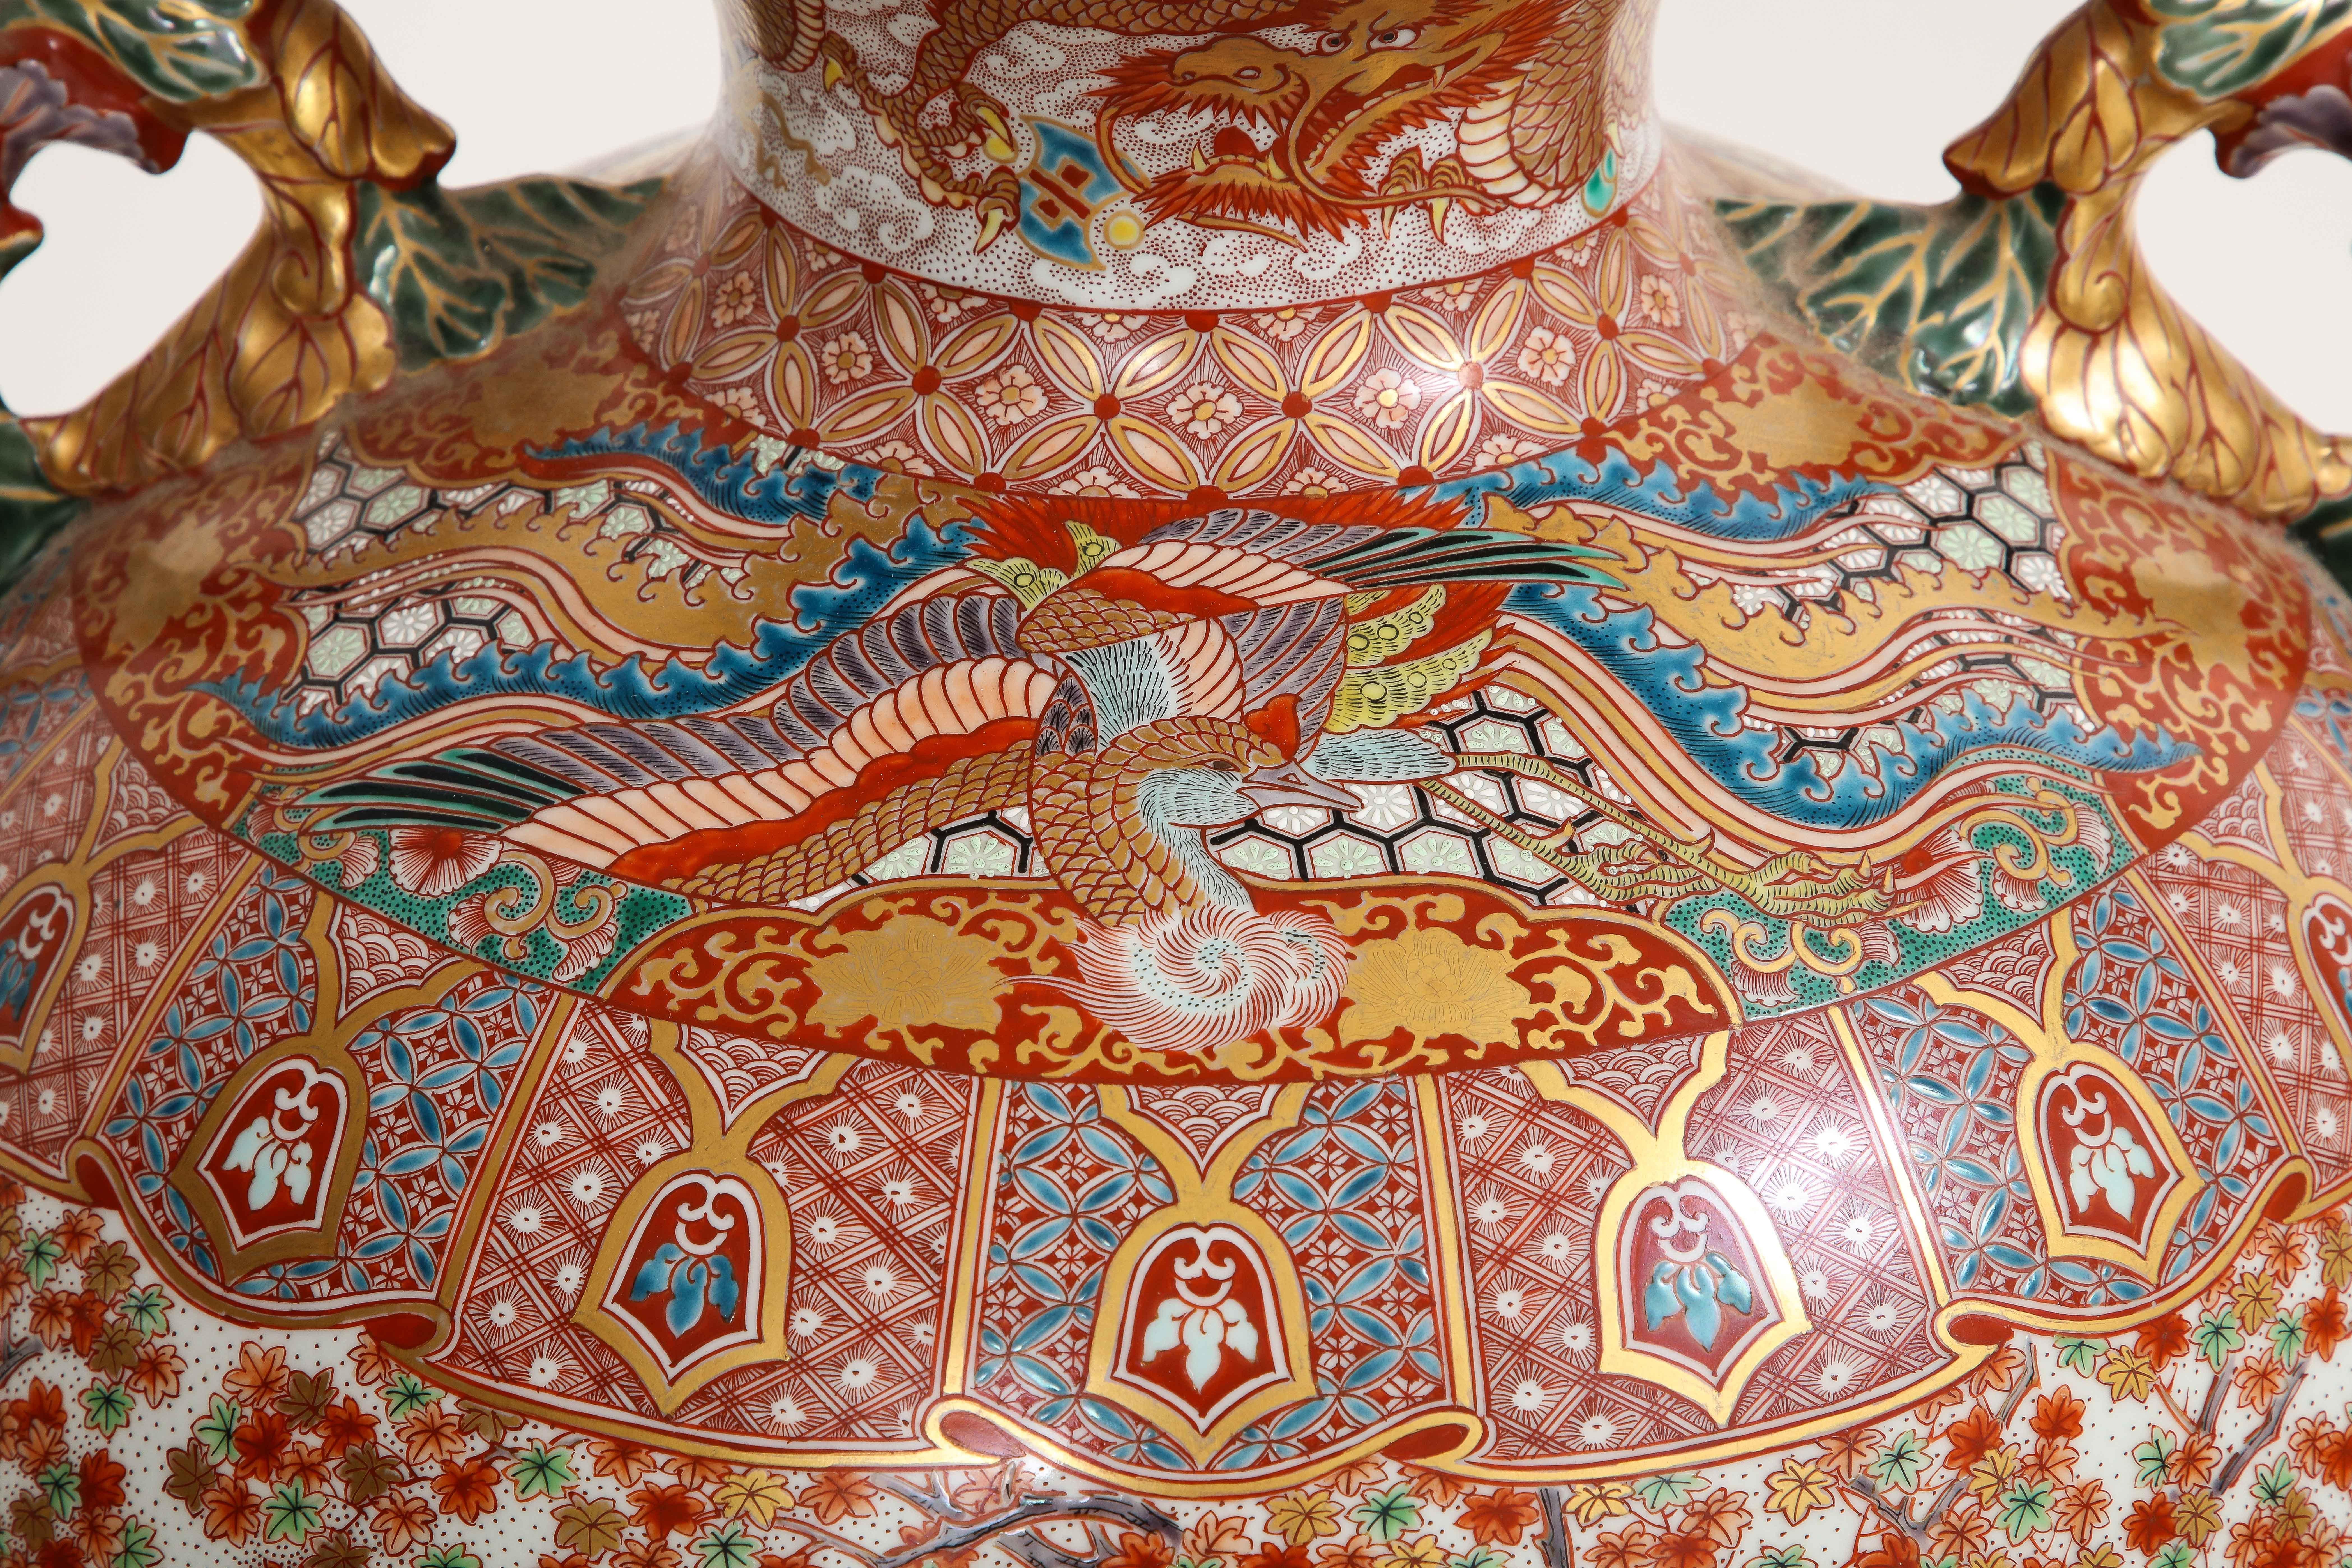 Monumental Japanese Kutani Porcelain Vase, Meiji/Taisho Period, Signed For Sale 3